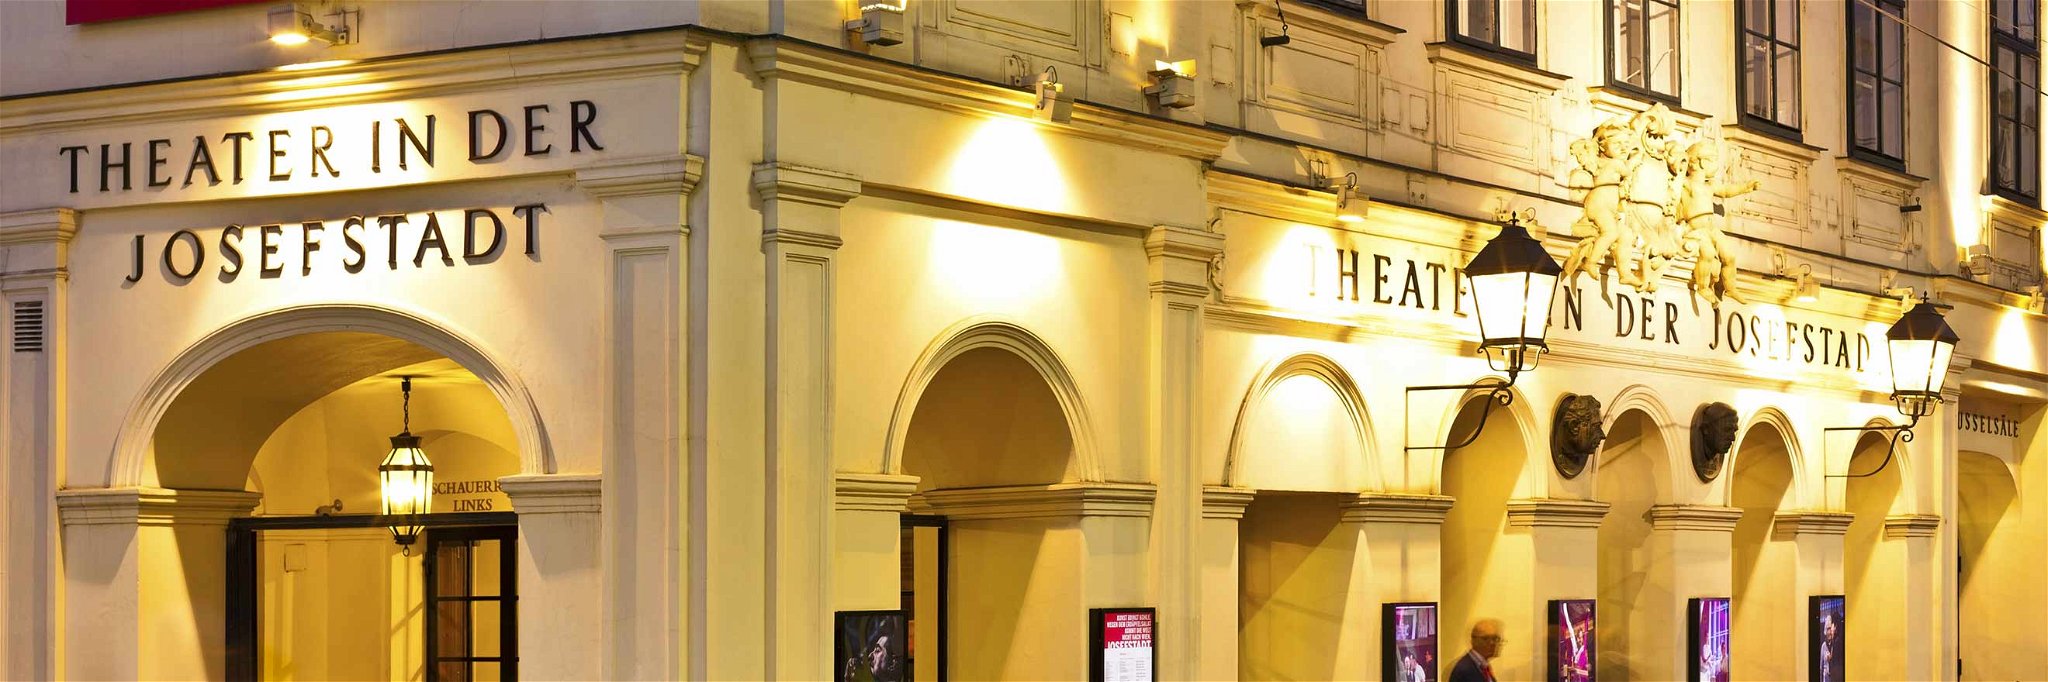 Das Theater in der Josefstadt bildet das kulturelle Zentrum des Bezirks.